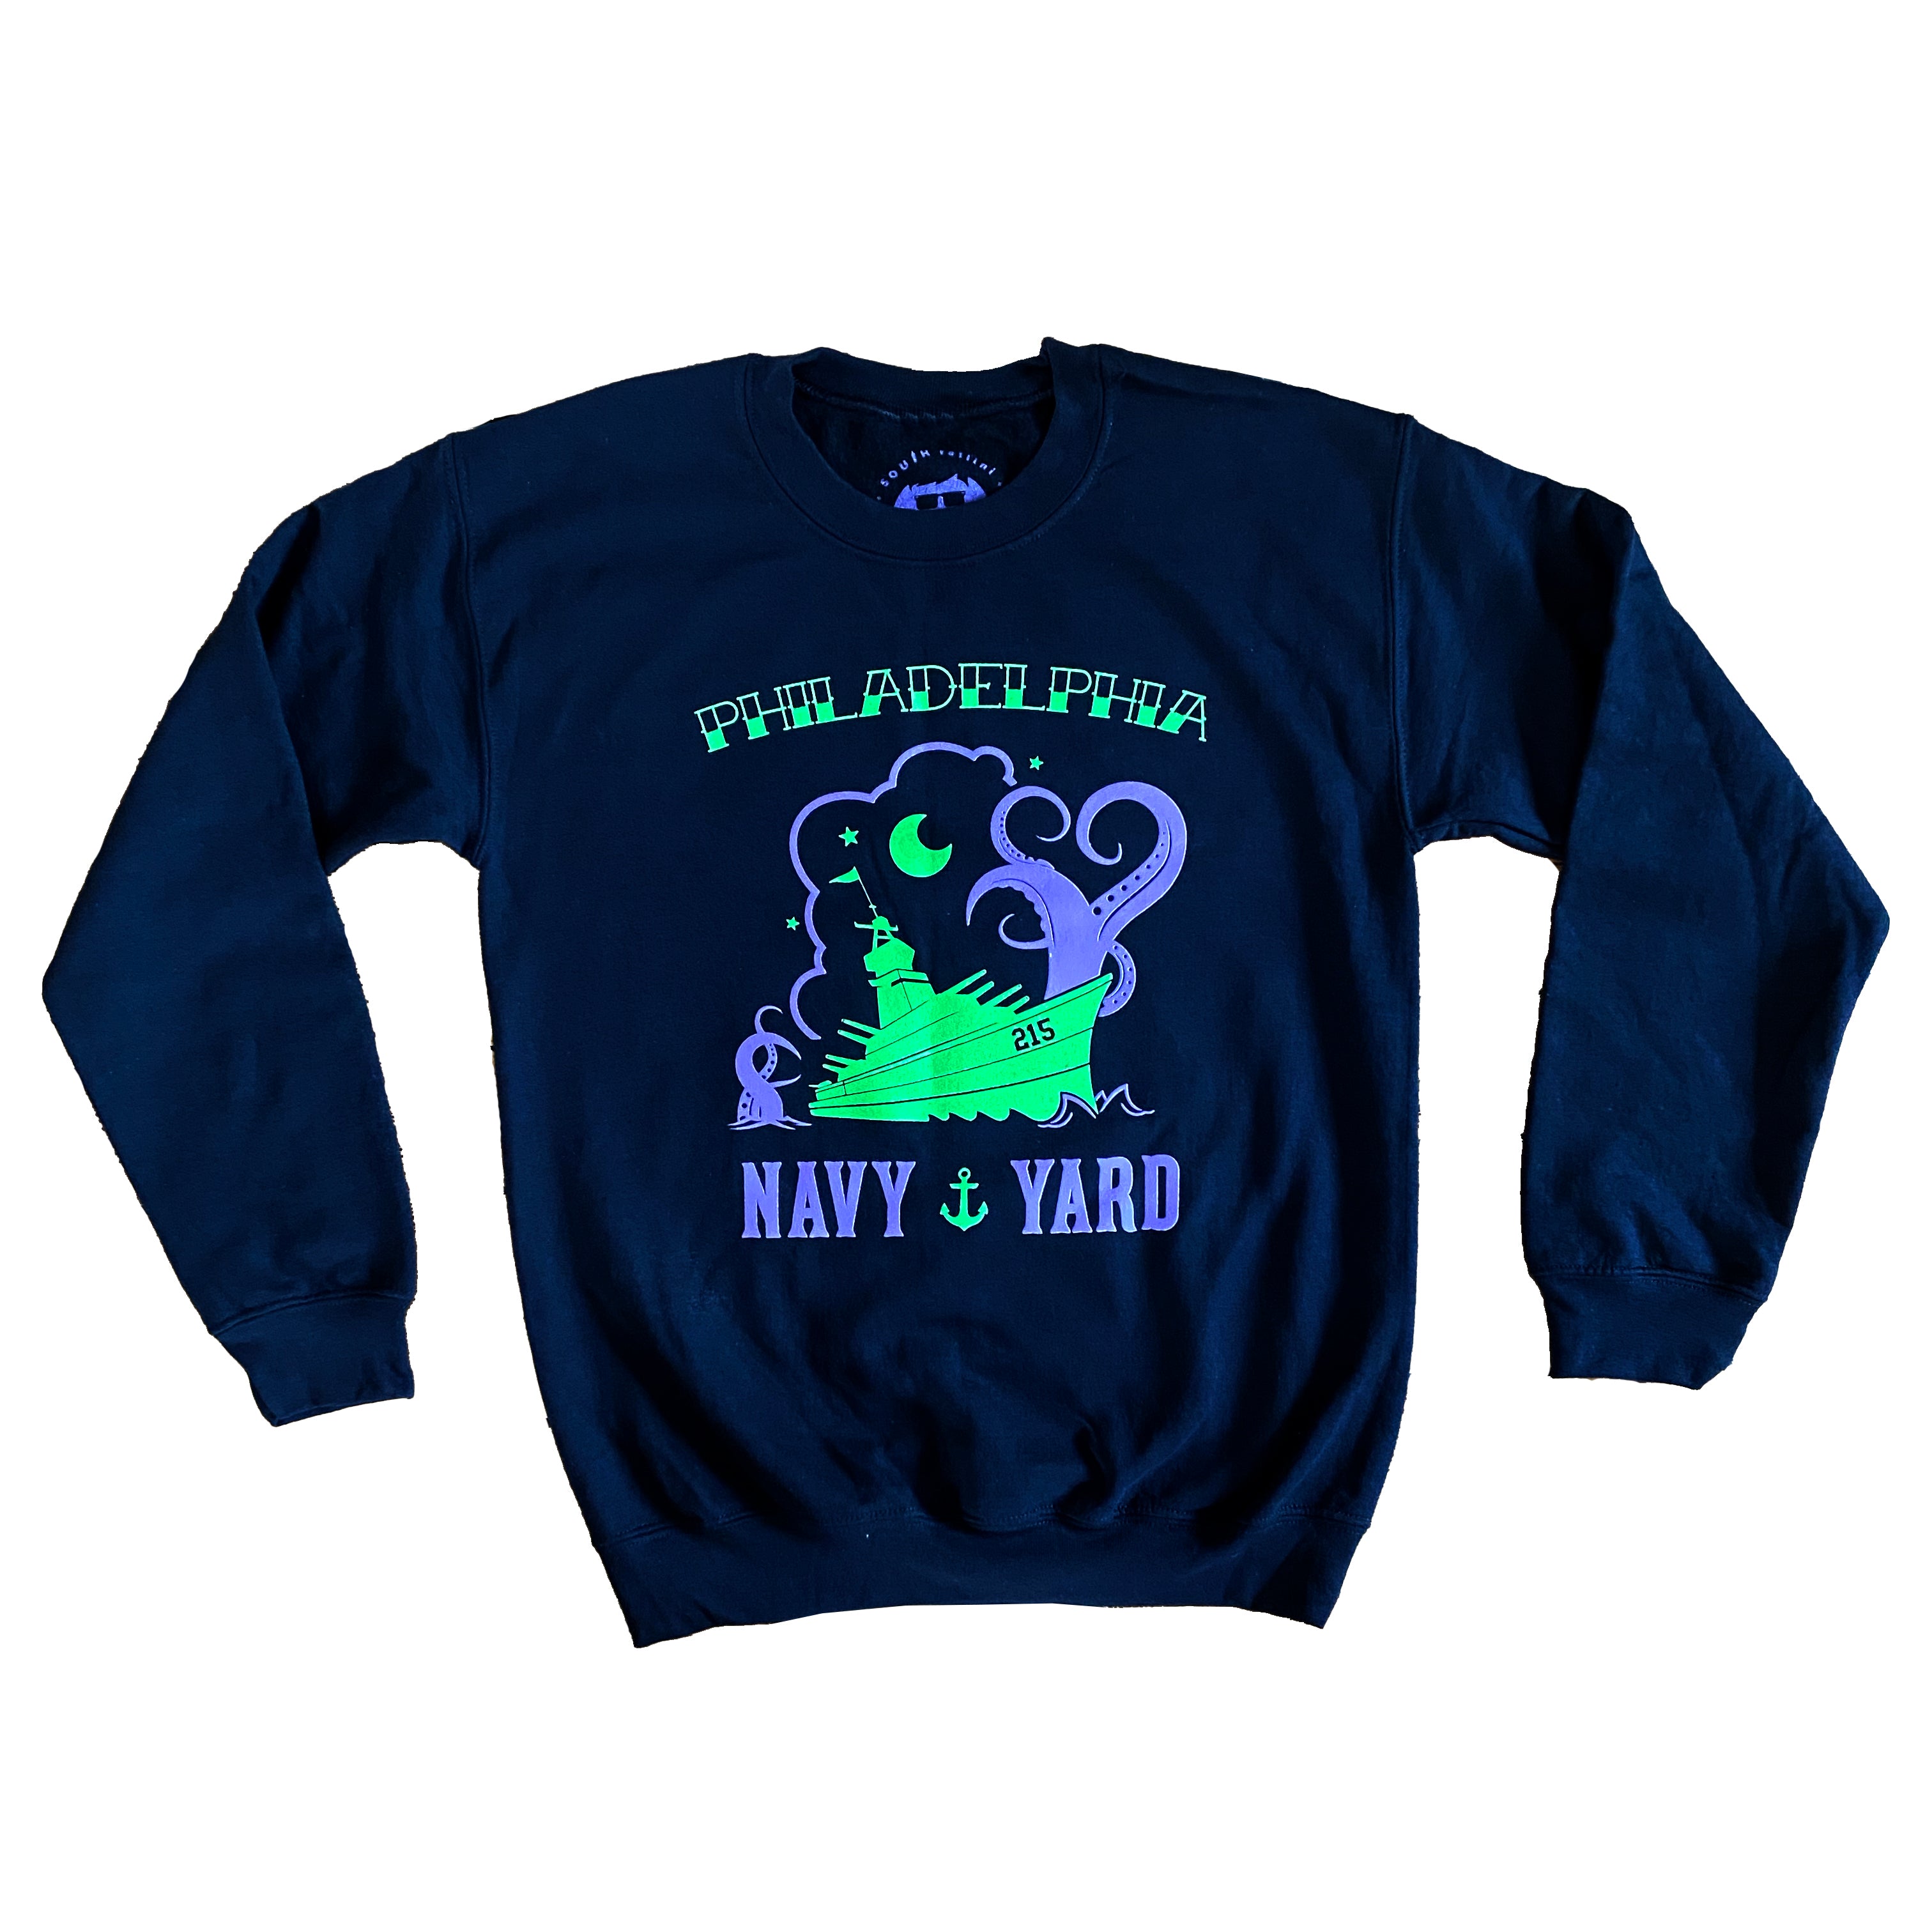 Navy Yard Women's Tank Top (Joker Colors) – SouthFellini